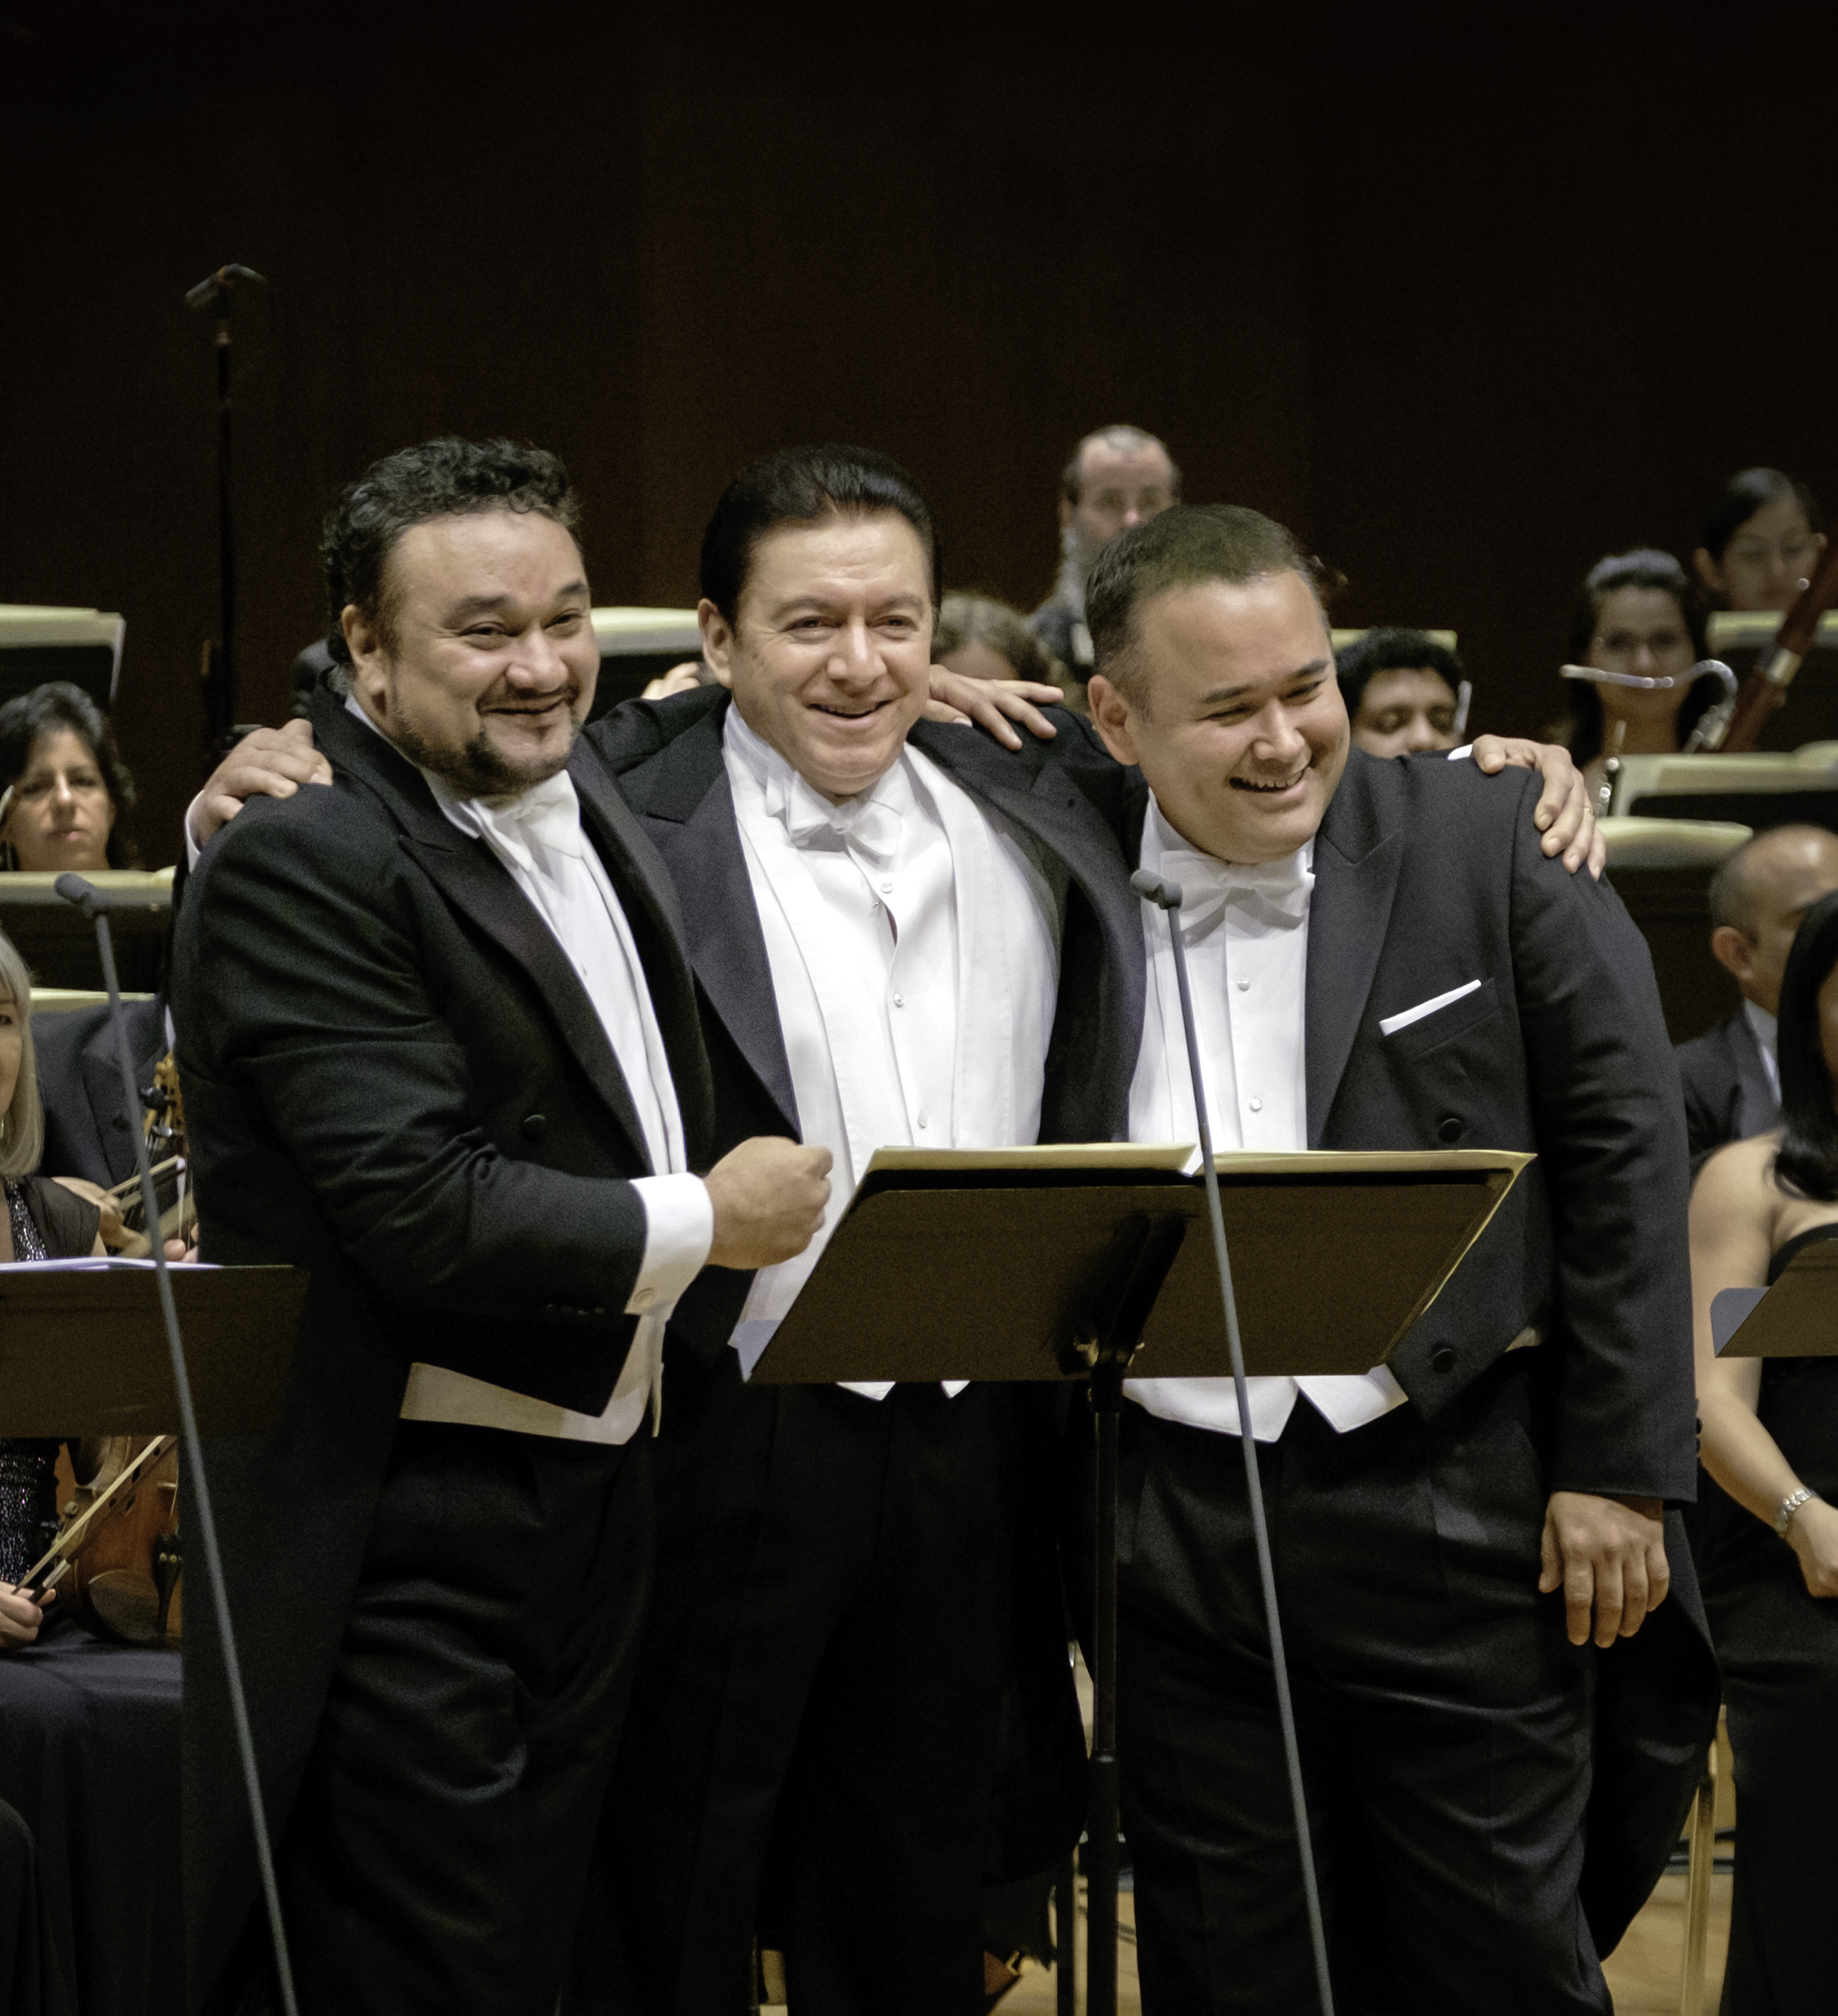 Gala de Araiza, Vargas y Camarena: tres generaciones de tenores mexicanos. Foto: Ana Lourdes Herrera / Pro Ópera AC